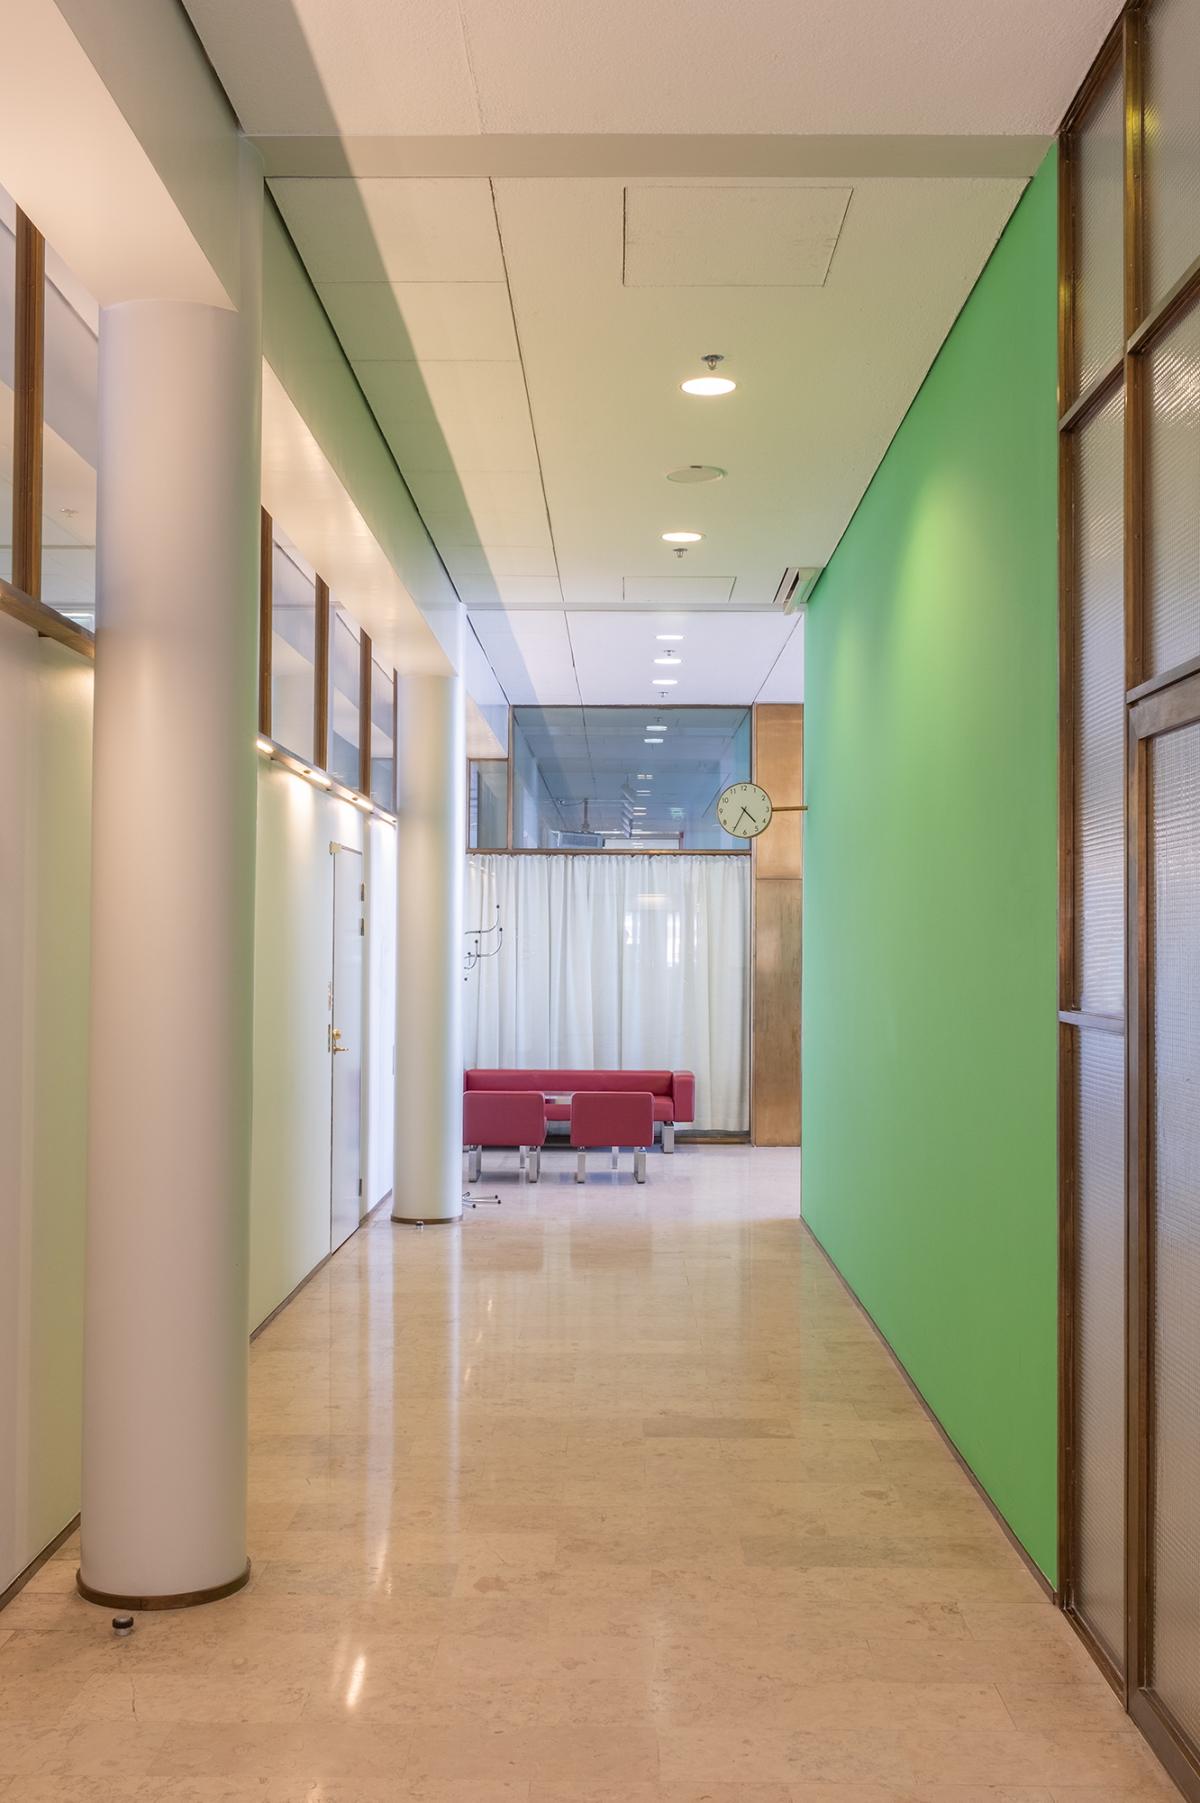 Foto av en kontorskorridor. Till vänster pelare och dörrar. Till höger en grön vägg och en glasvägg med kopparkarm.